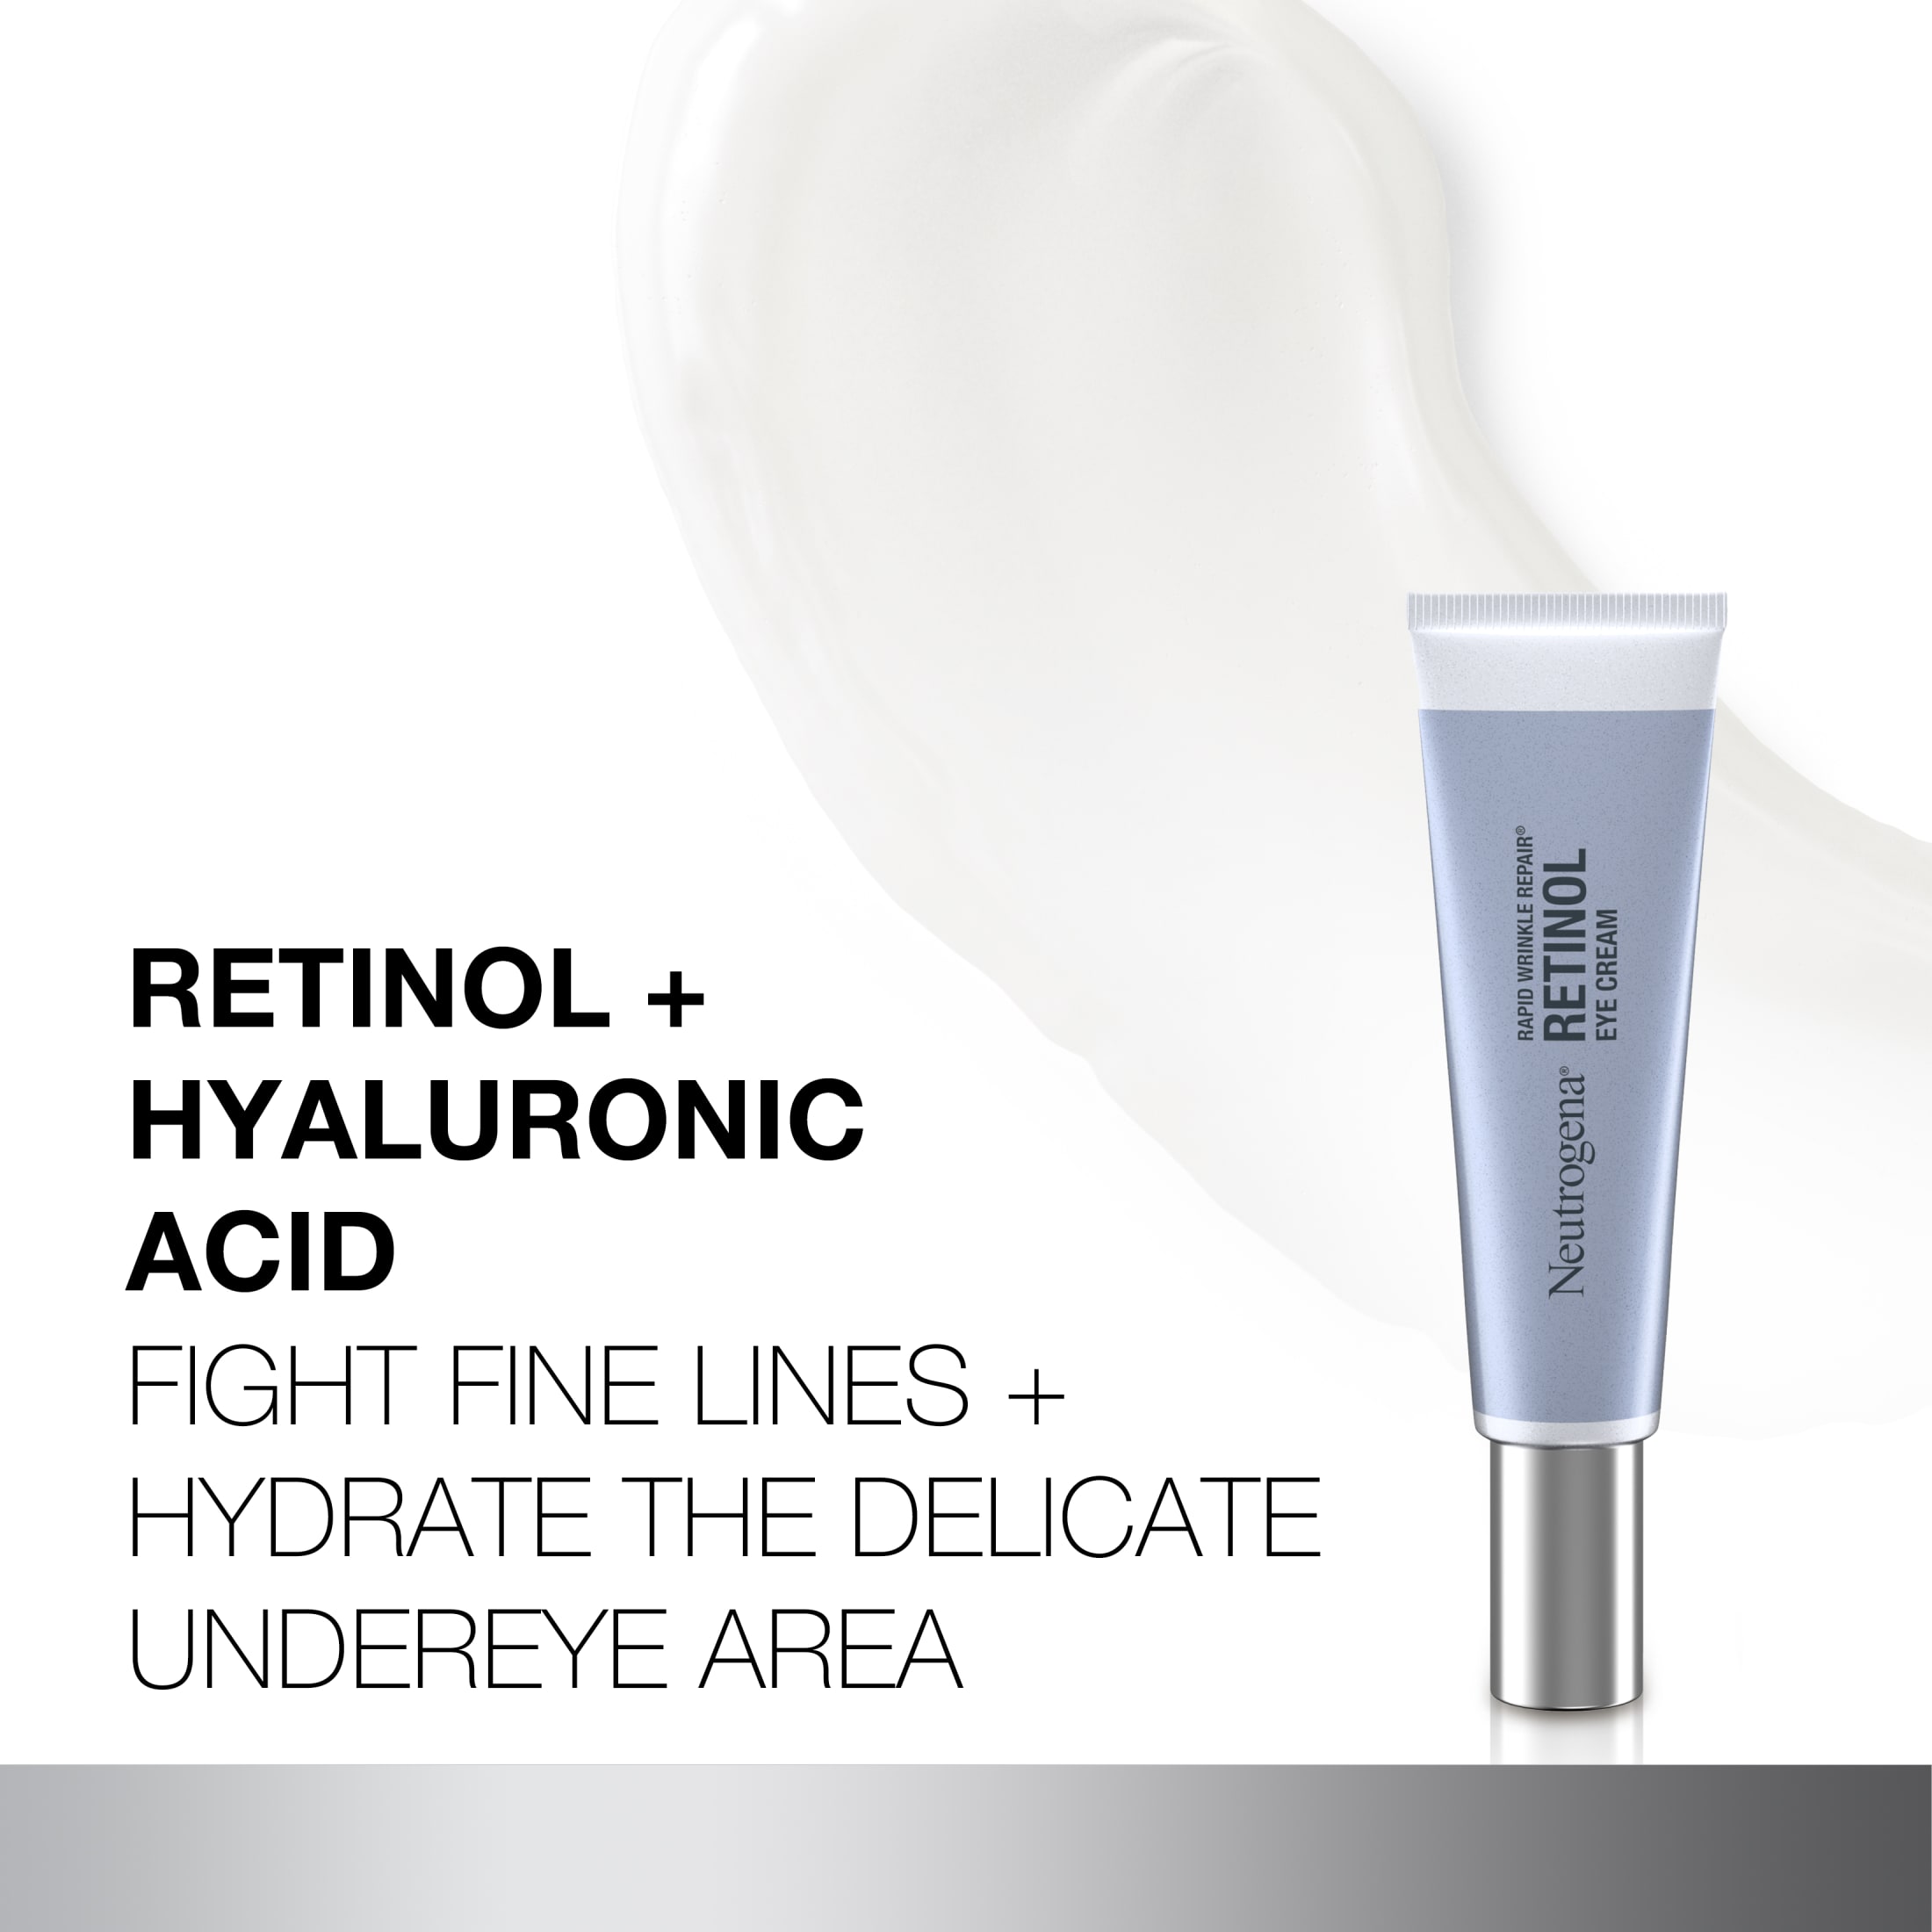 Neutrogena Rapid Wrinkle Repair Retinol Skin Care Eye Cream, 0.5 oz - image 5 of 10